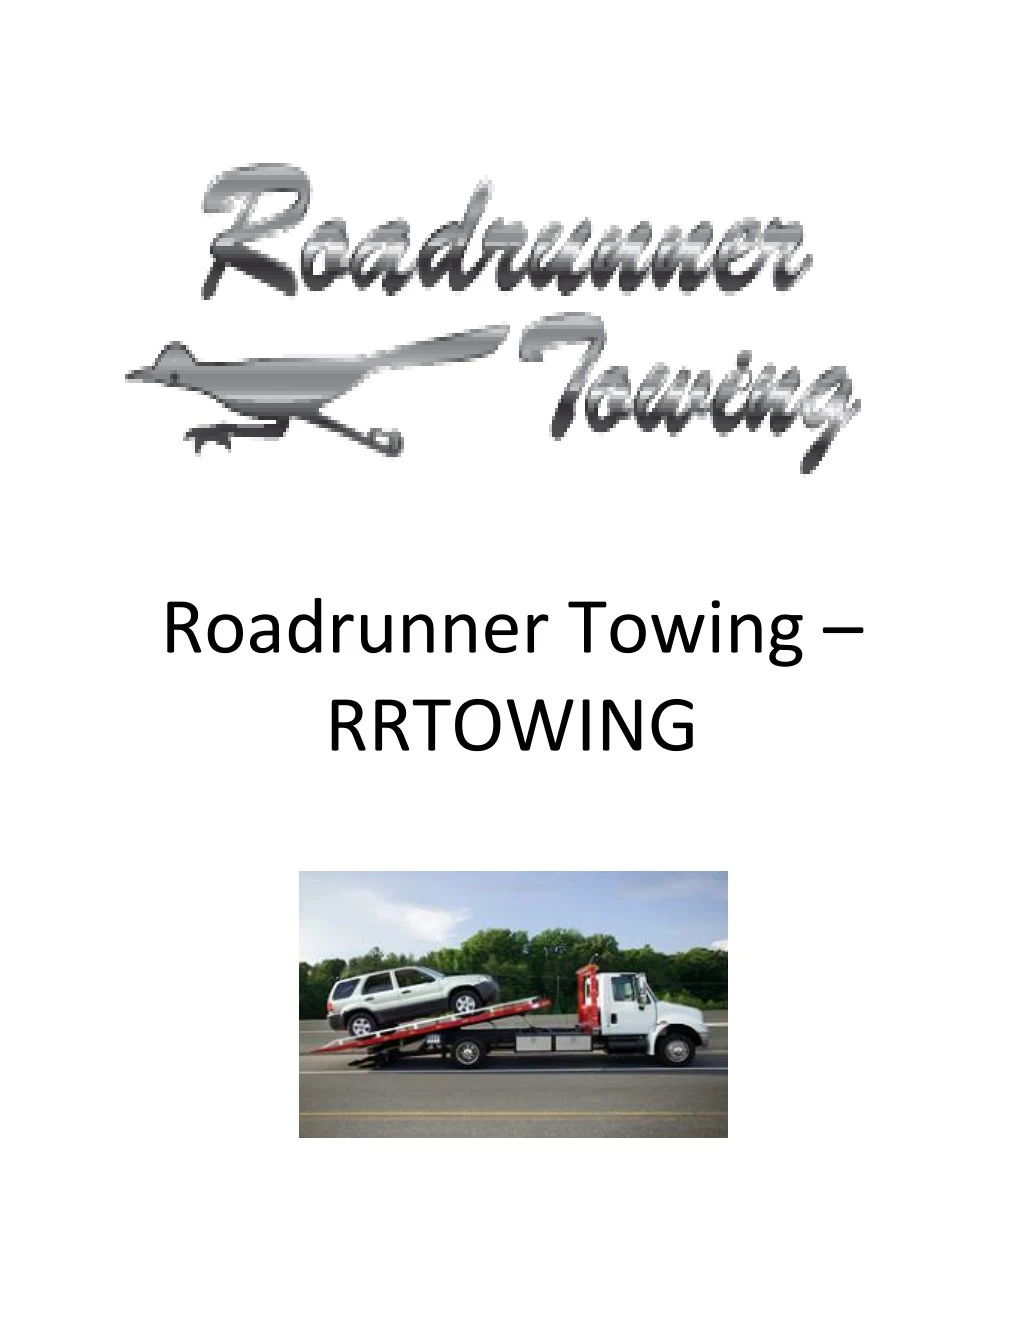 roadrunner towing rrtowing